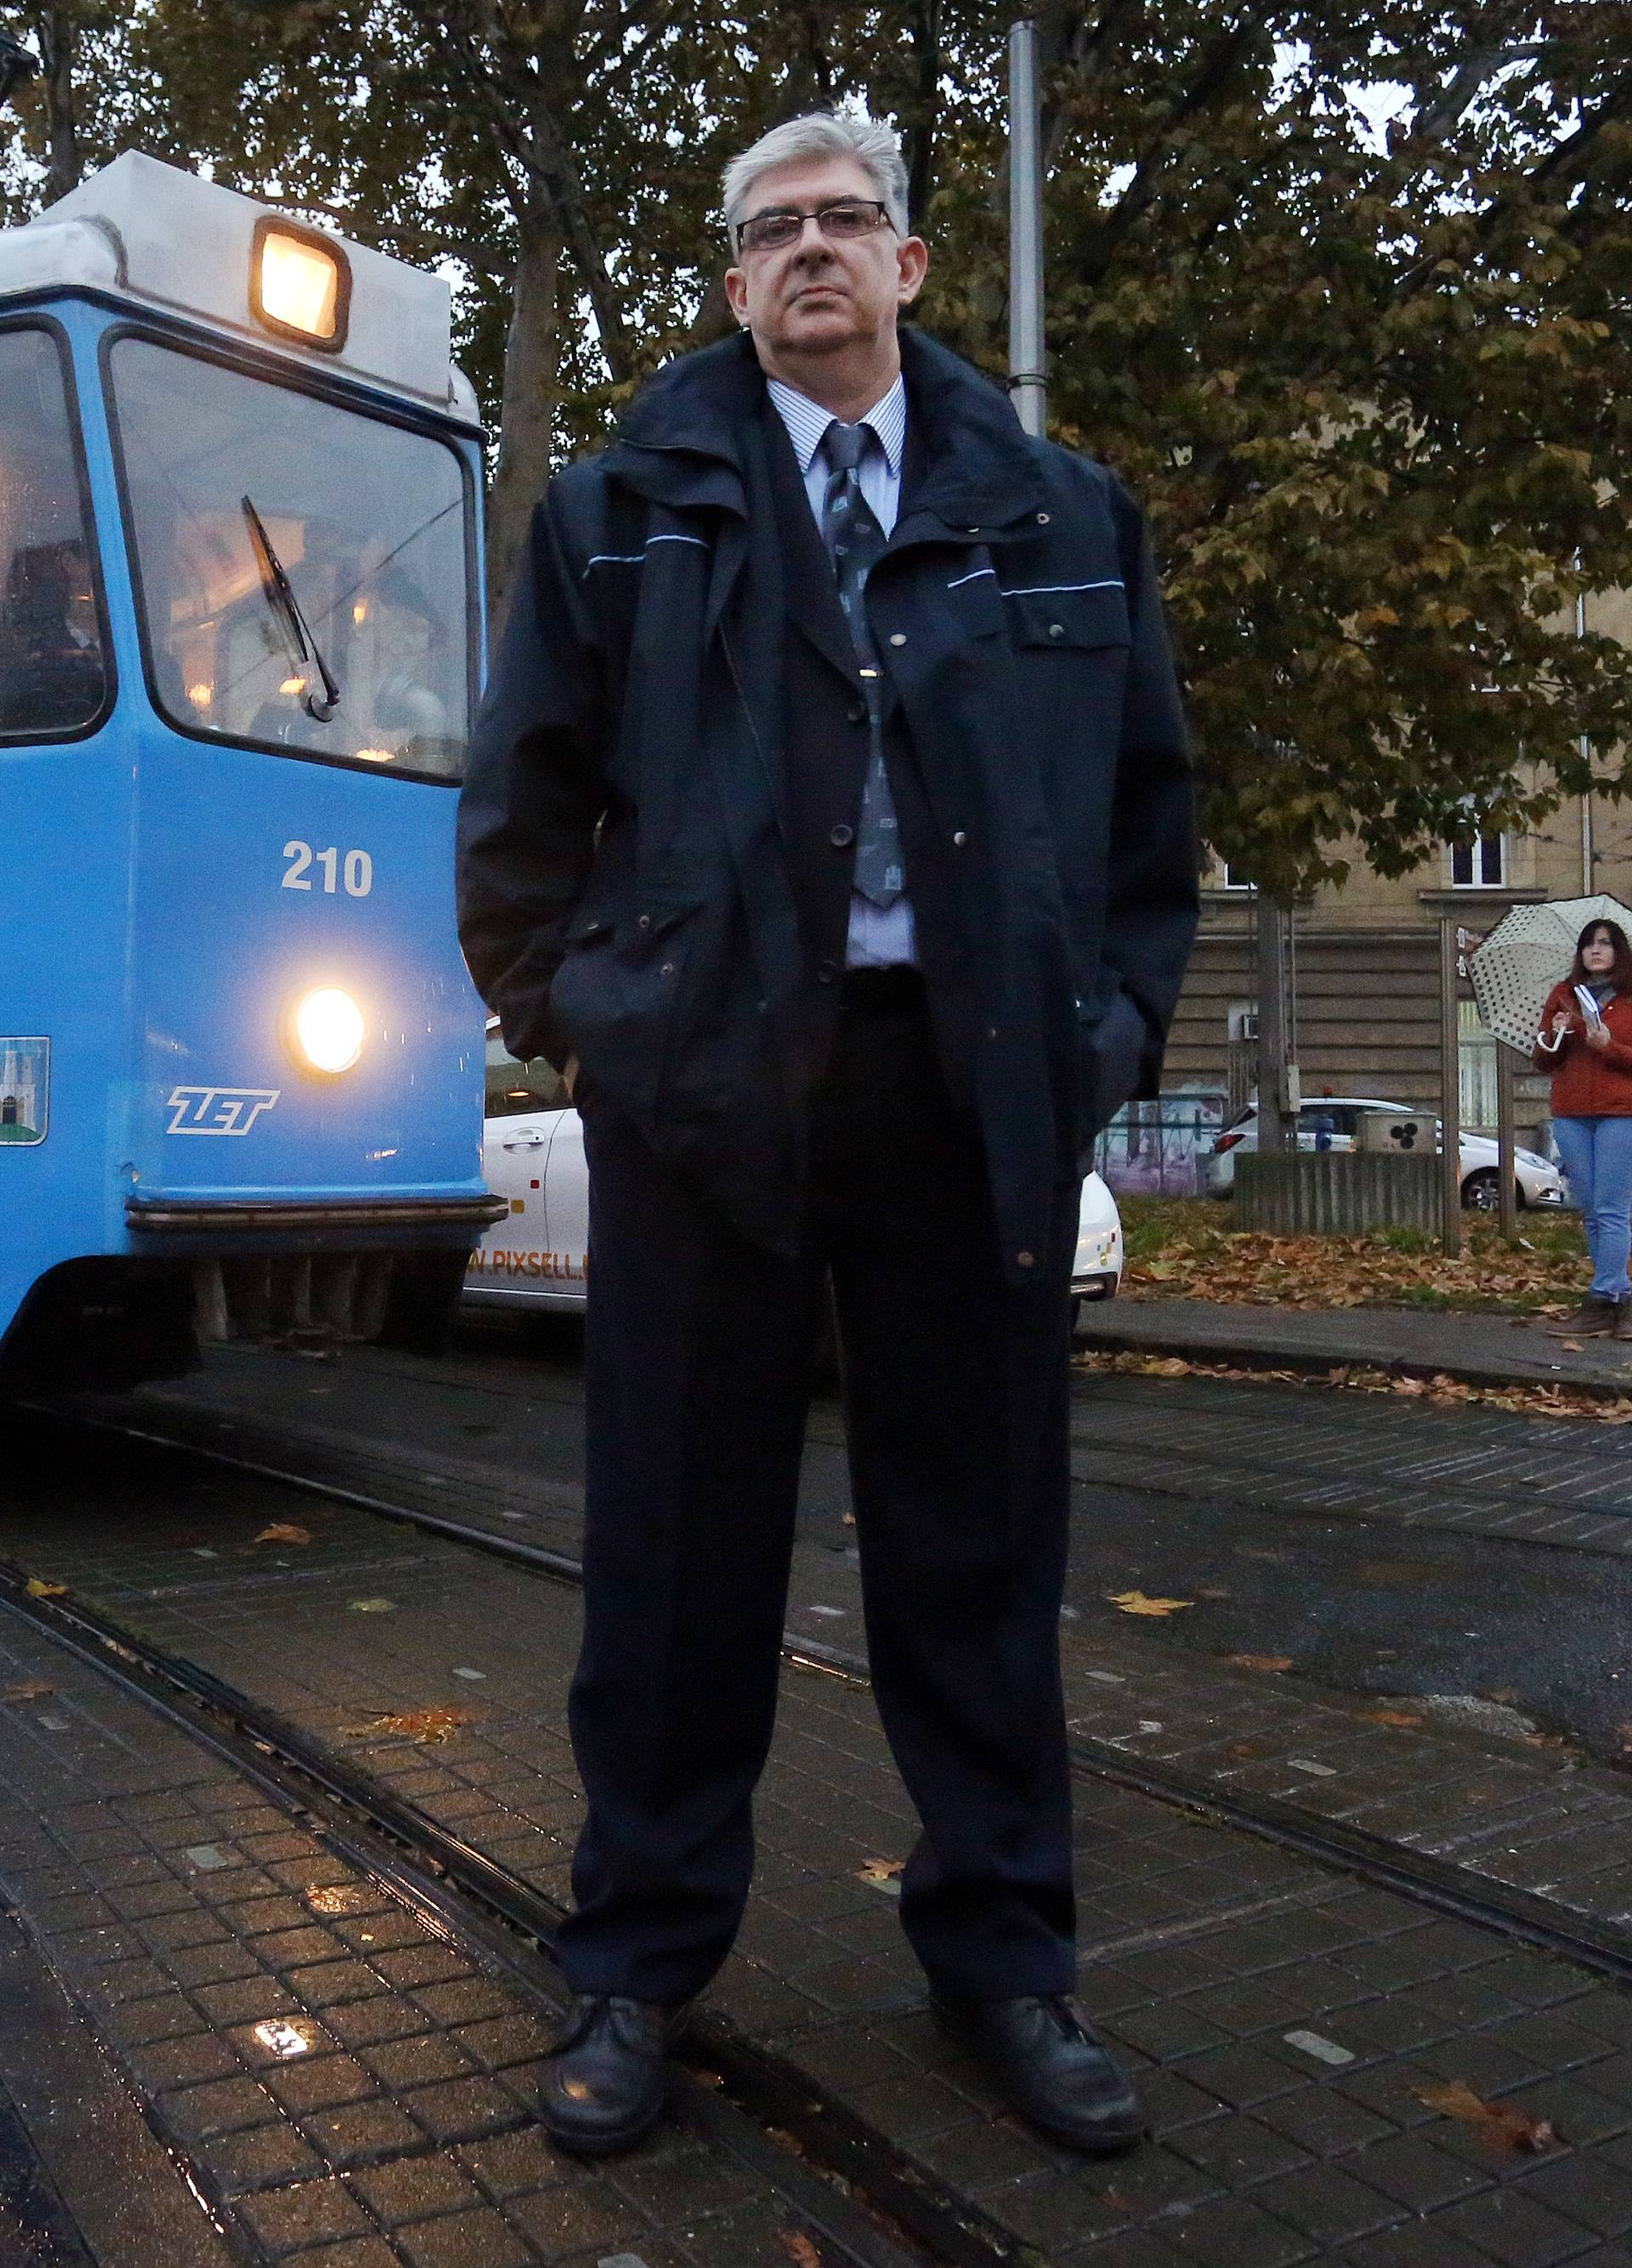 Nije se bojao: Kolegu i putnike spasio od nasilnika u tramvaju